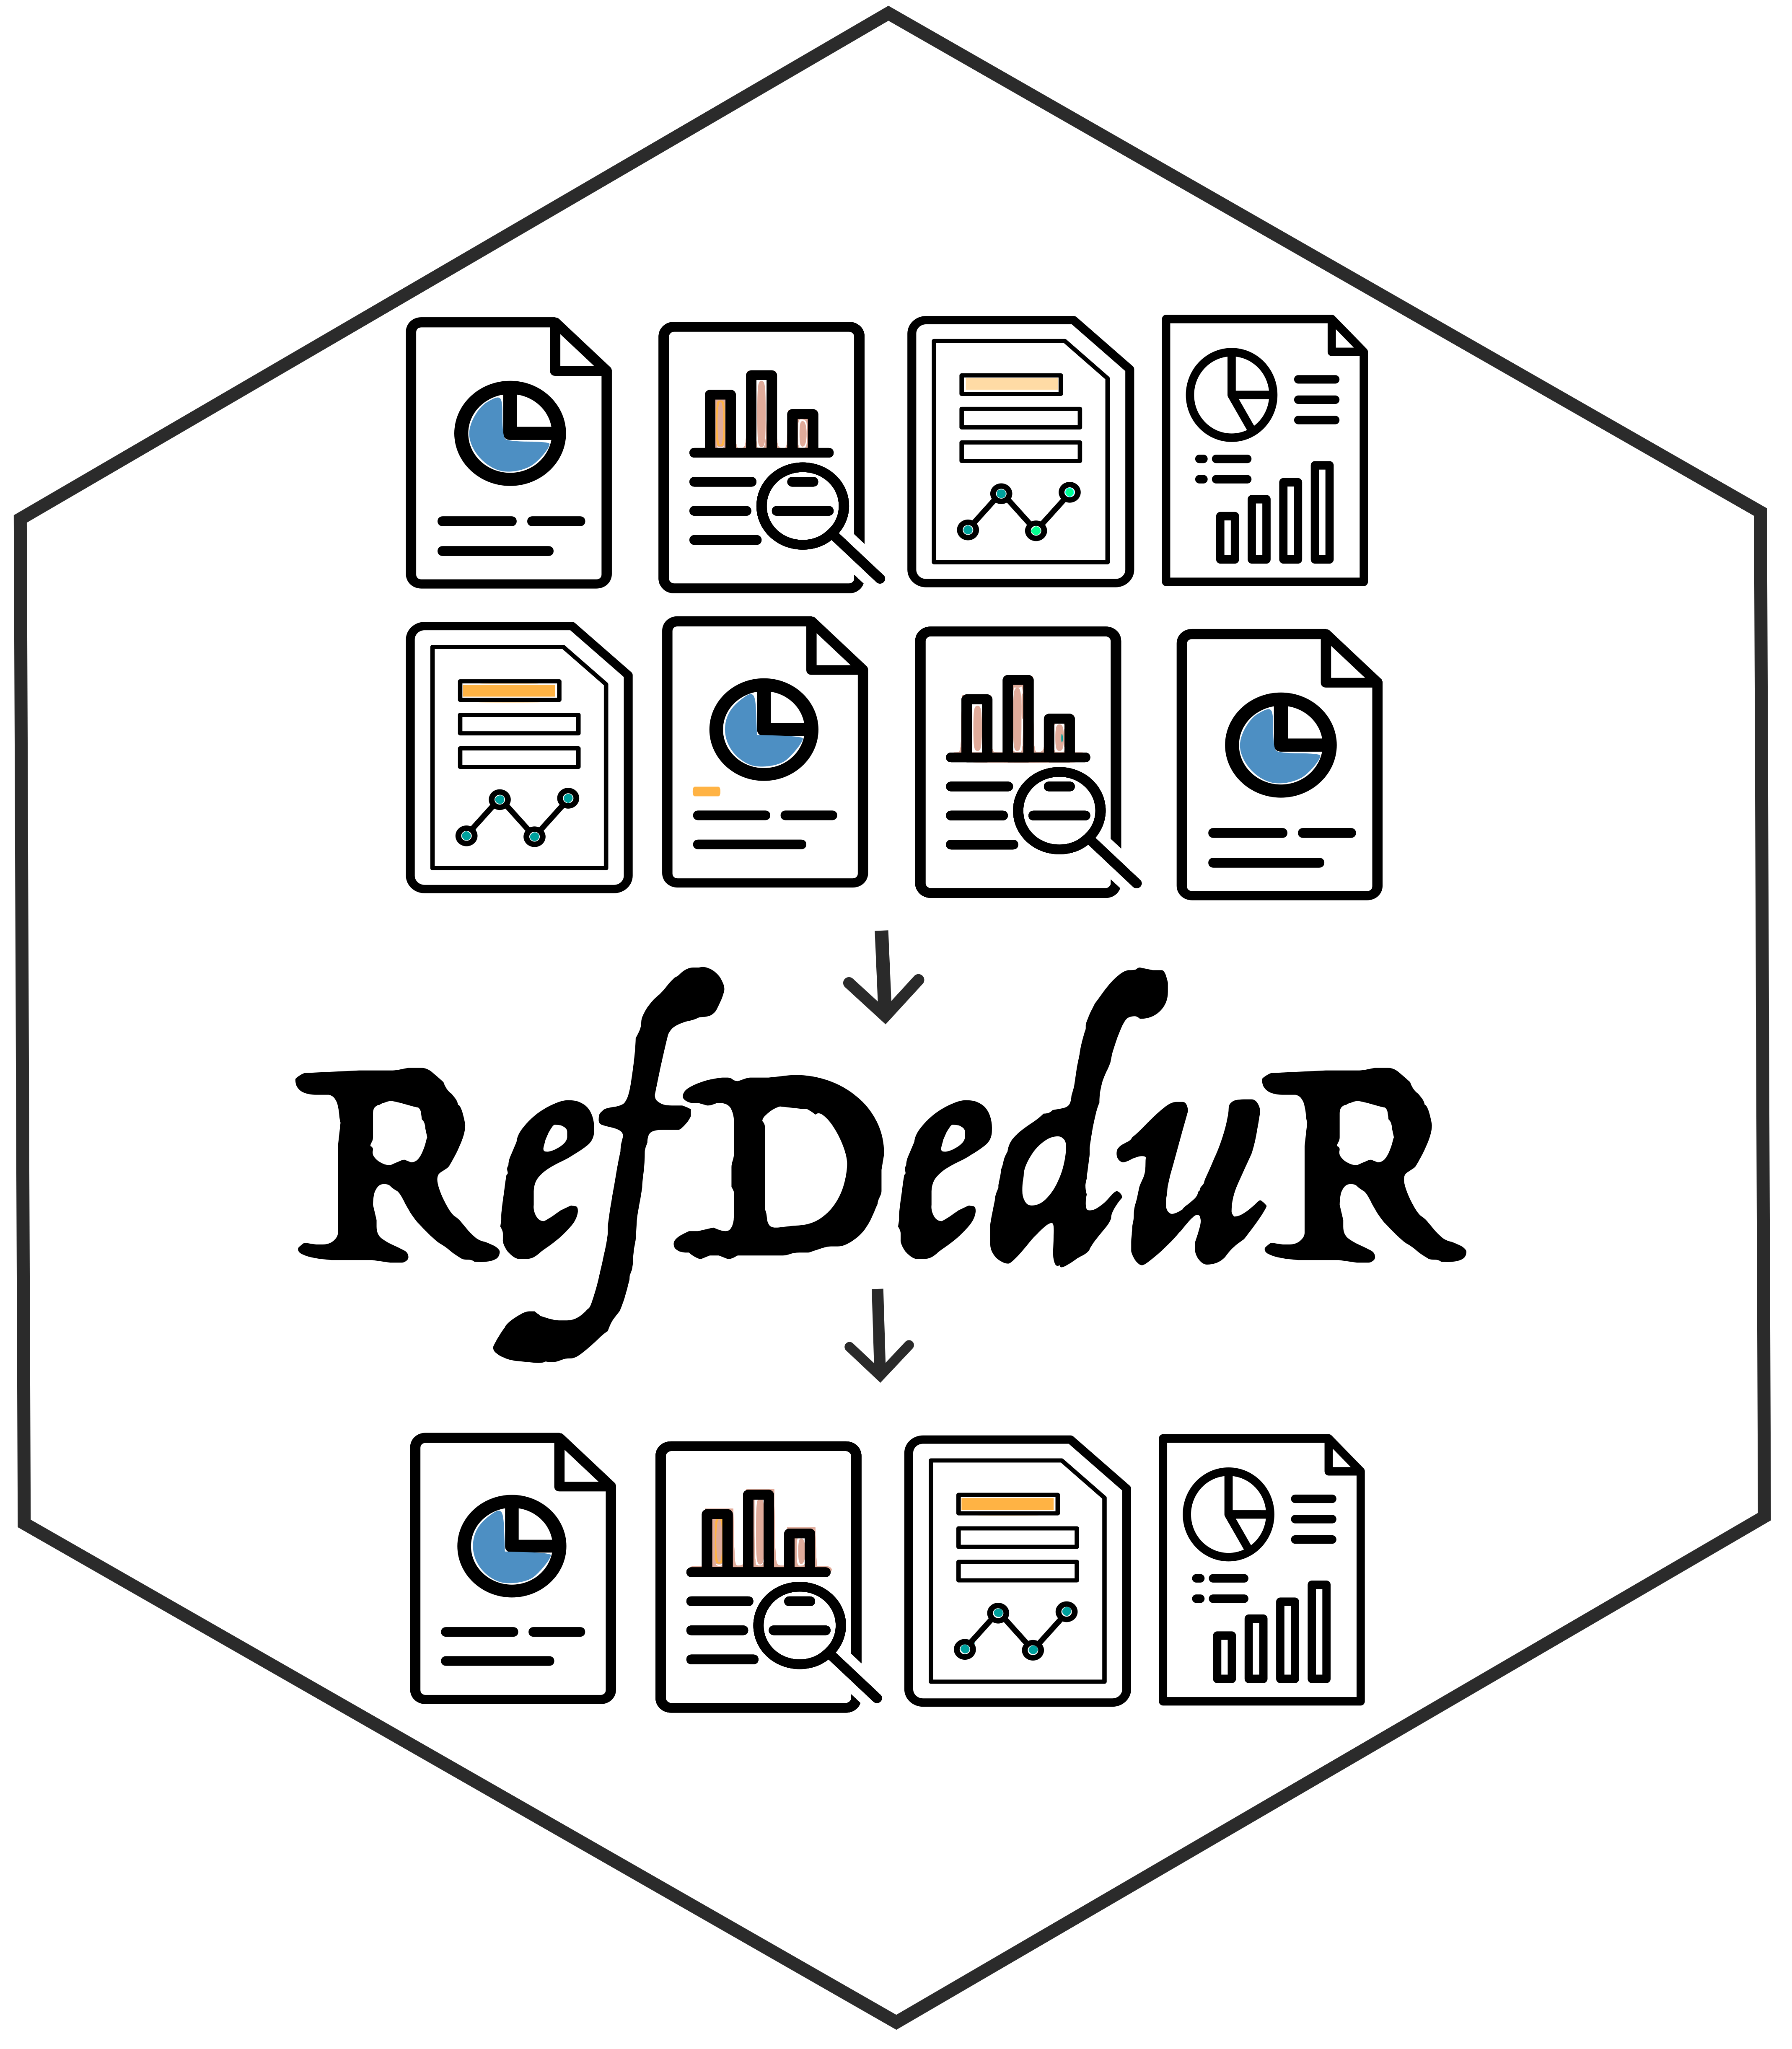 RefDeduR logo